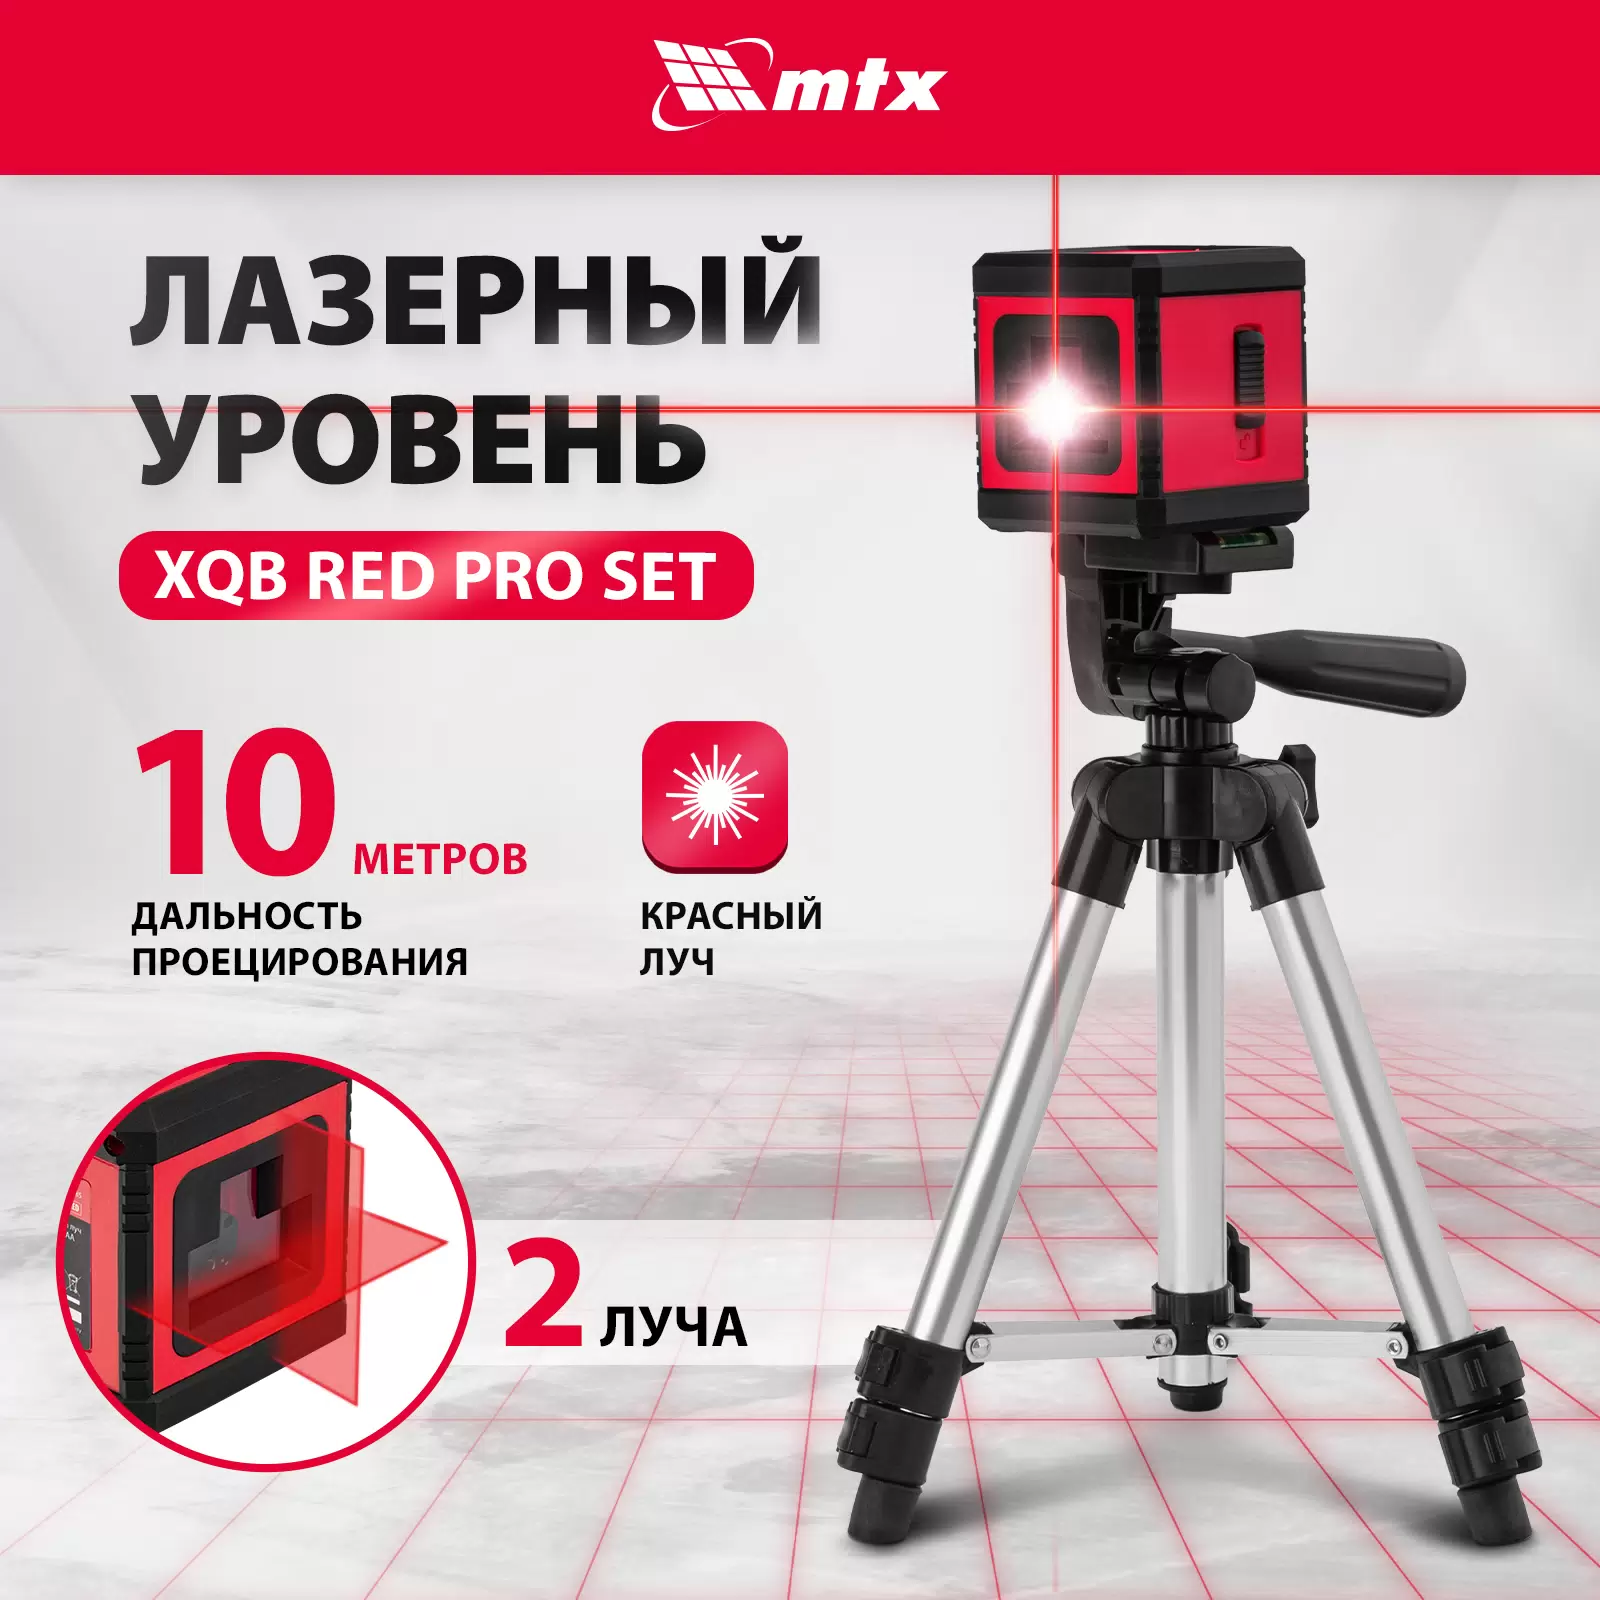 Лазерный уровень MTX XQB RED Pro SET, 10 м, красный луч, батарейки, штатив 350185 - VLARNIKA в Донецке